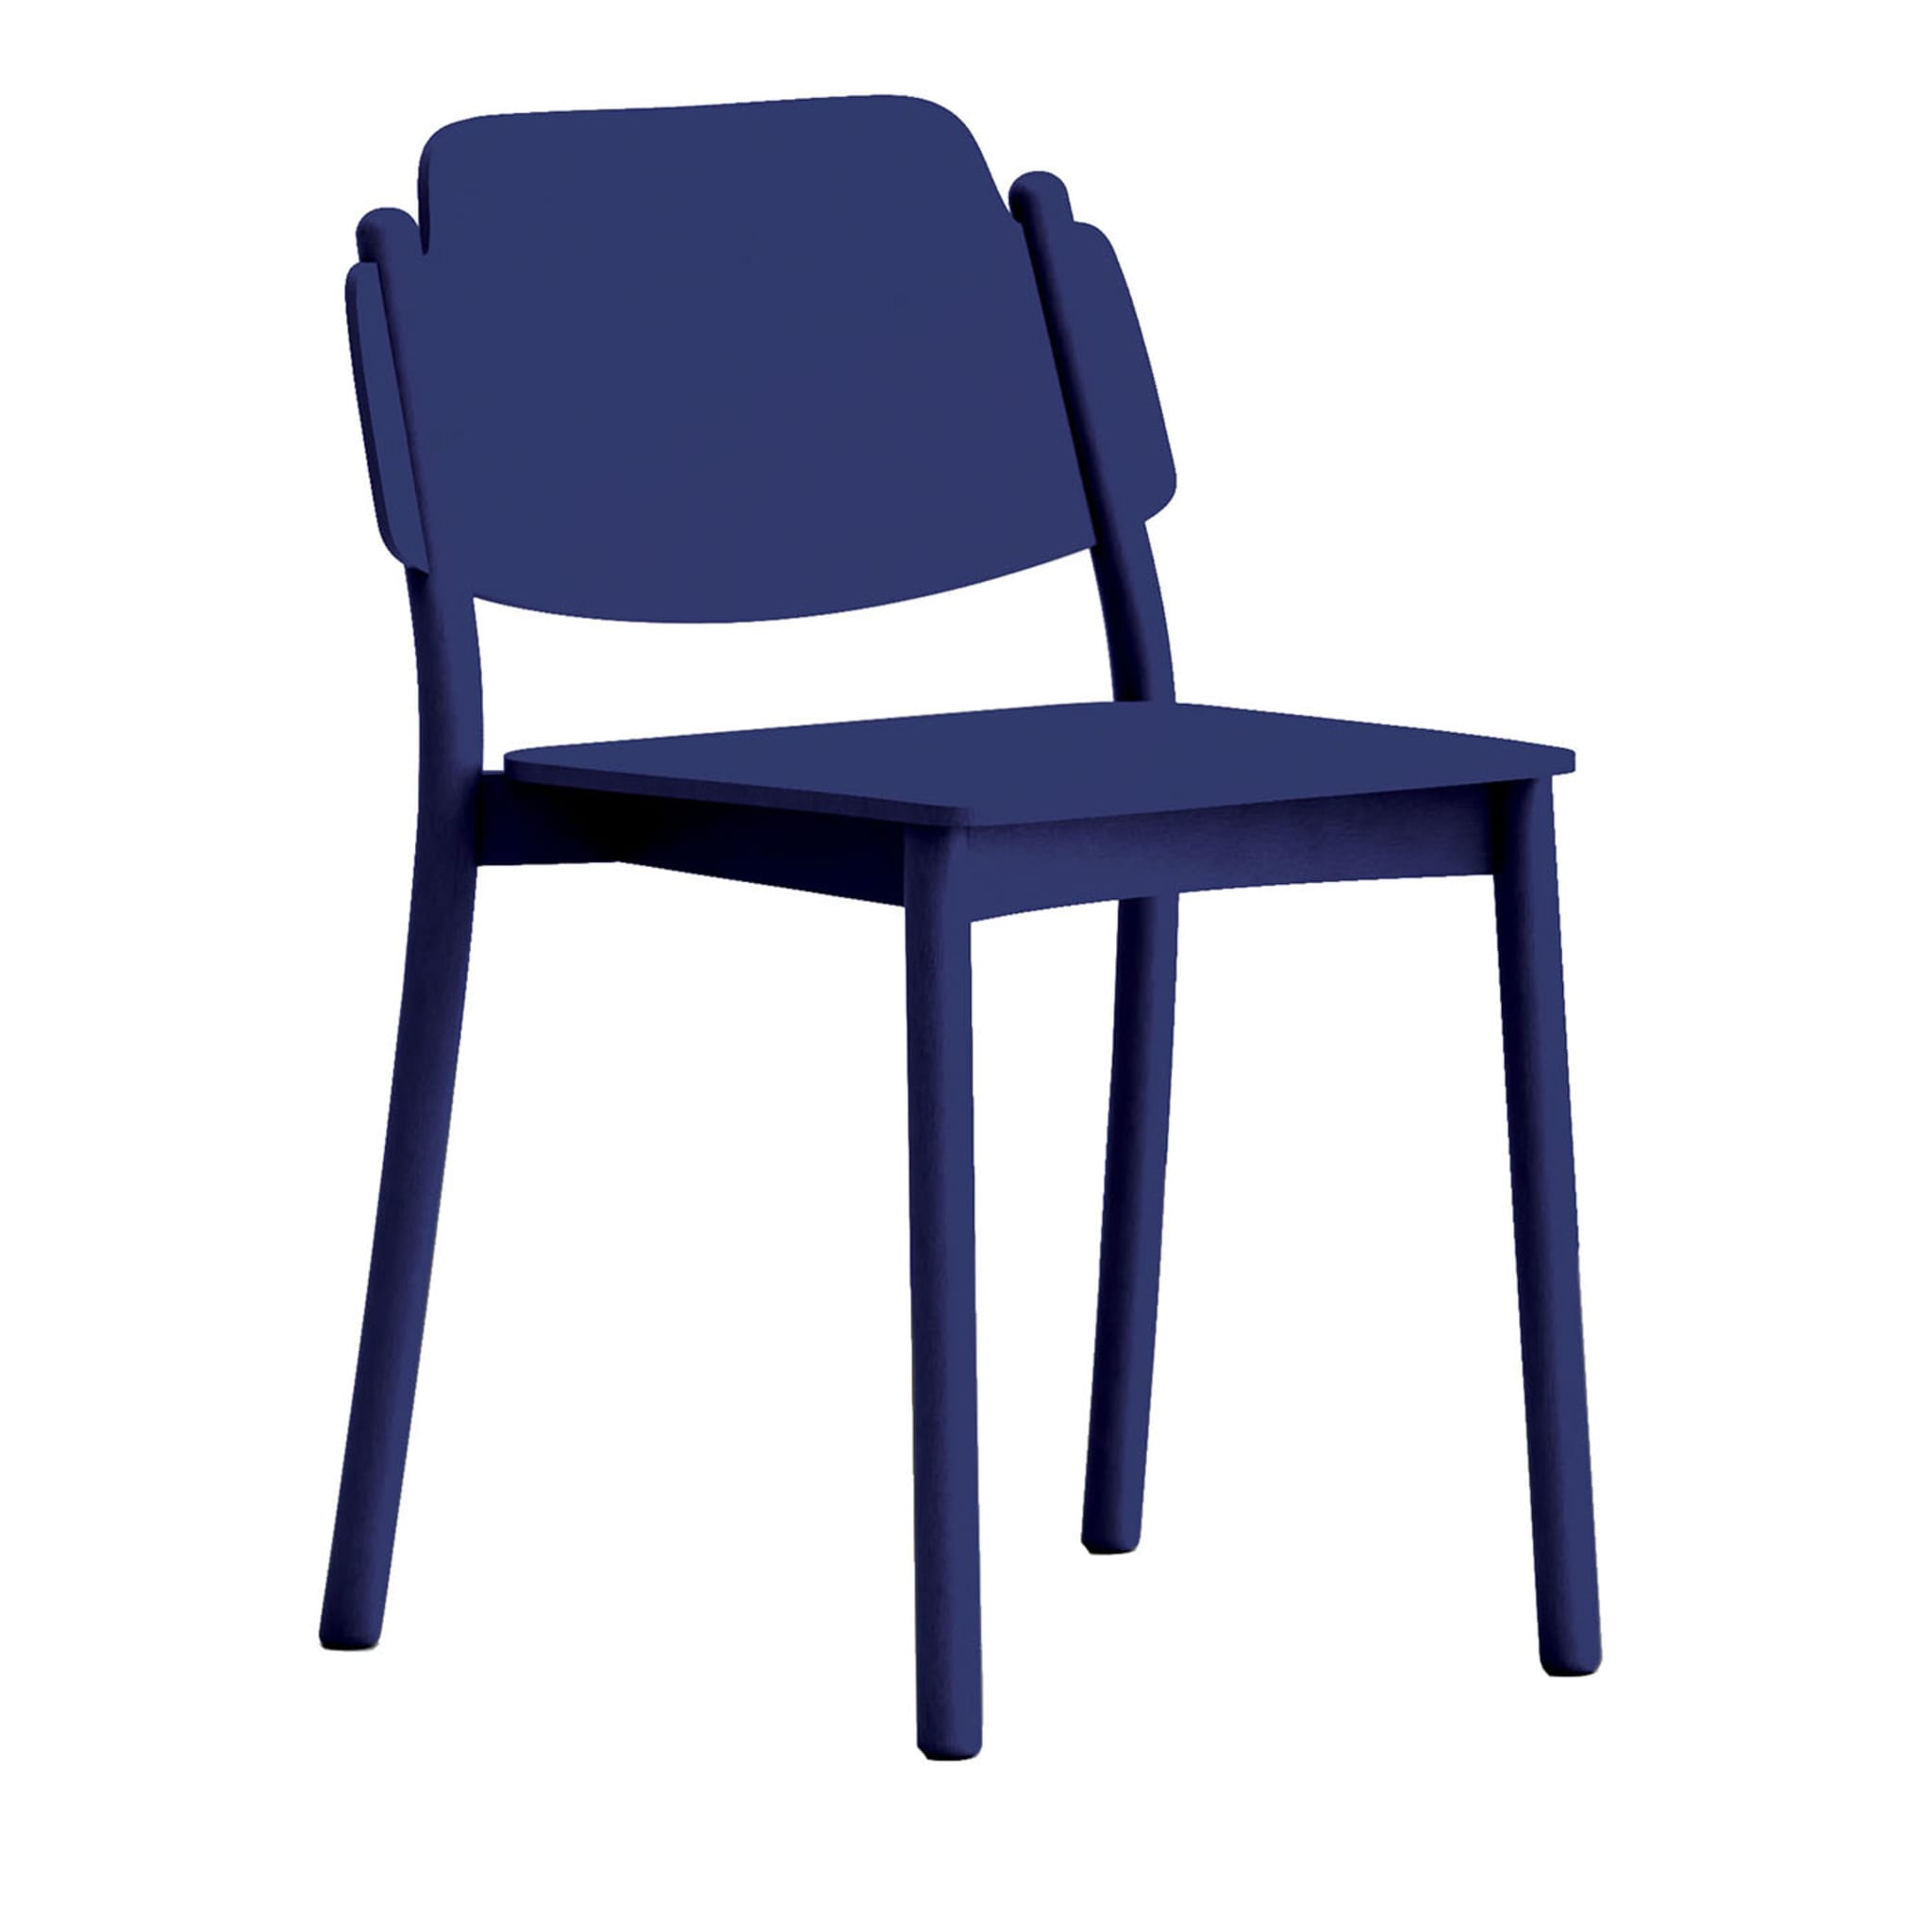 My Chair Blue Chair by Emilio Nanni - Main view